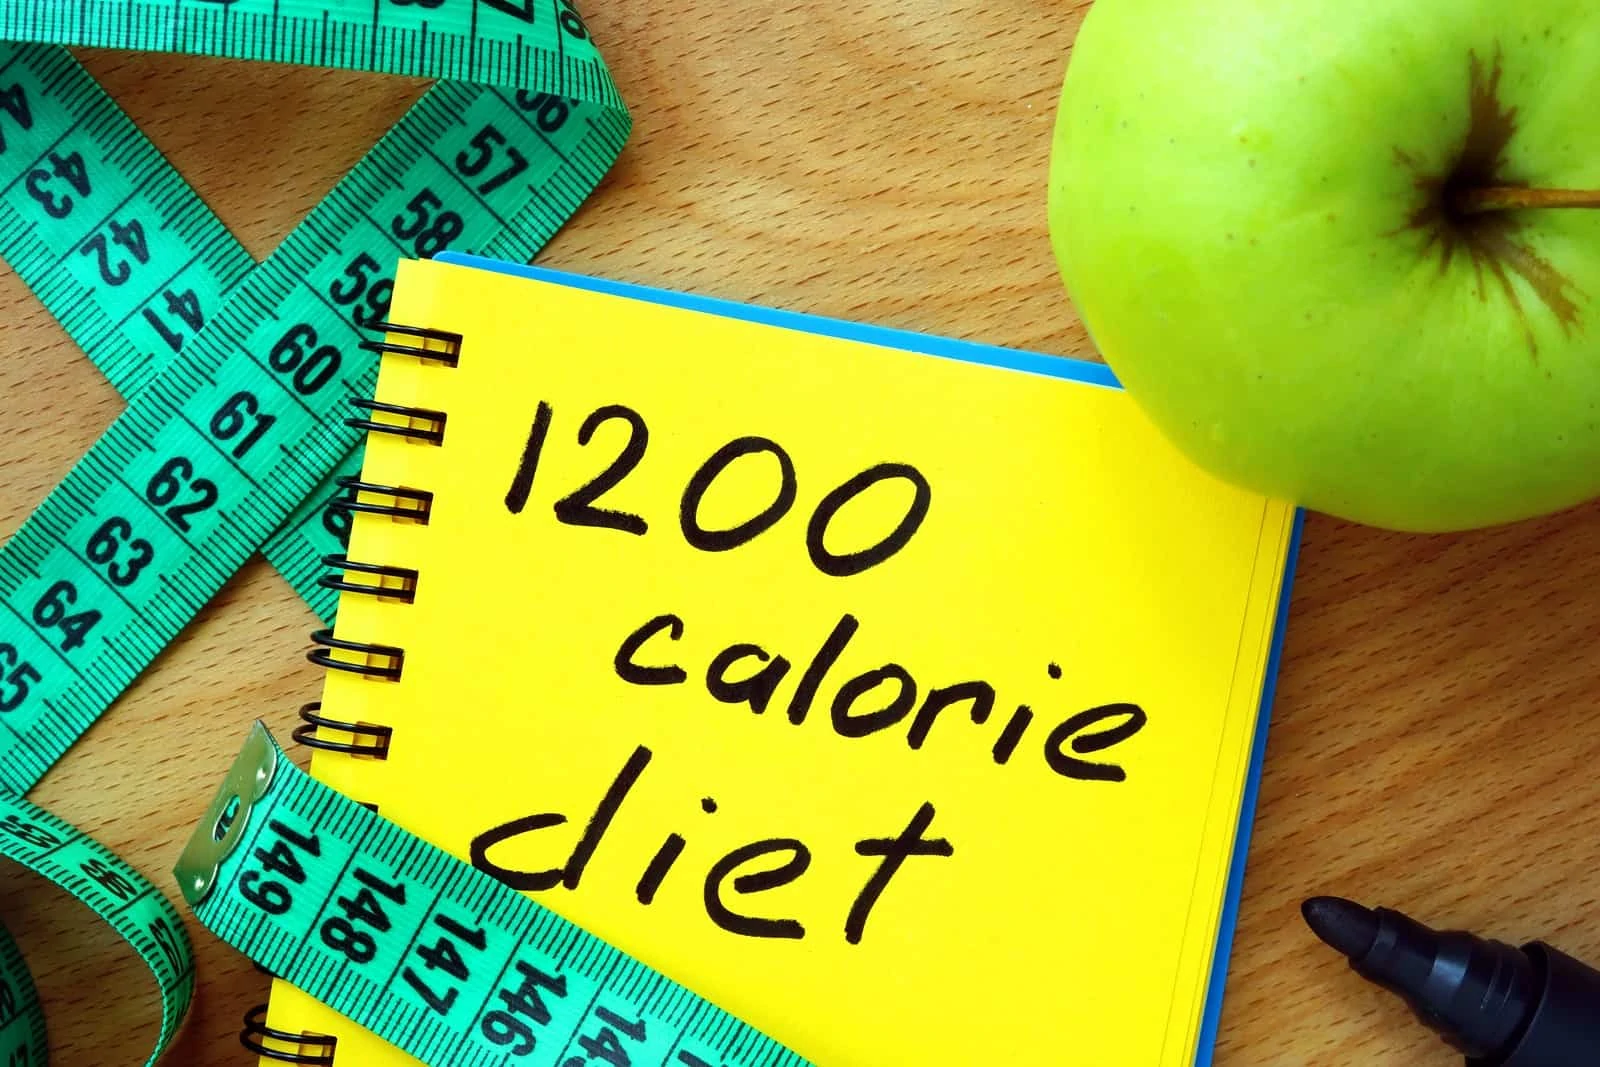 1200 kalóriás diéta – Milyen ételeket lehet enni?